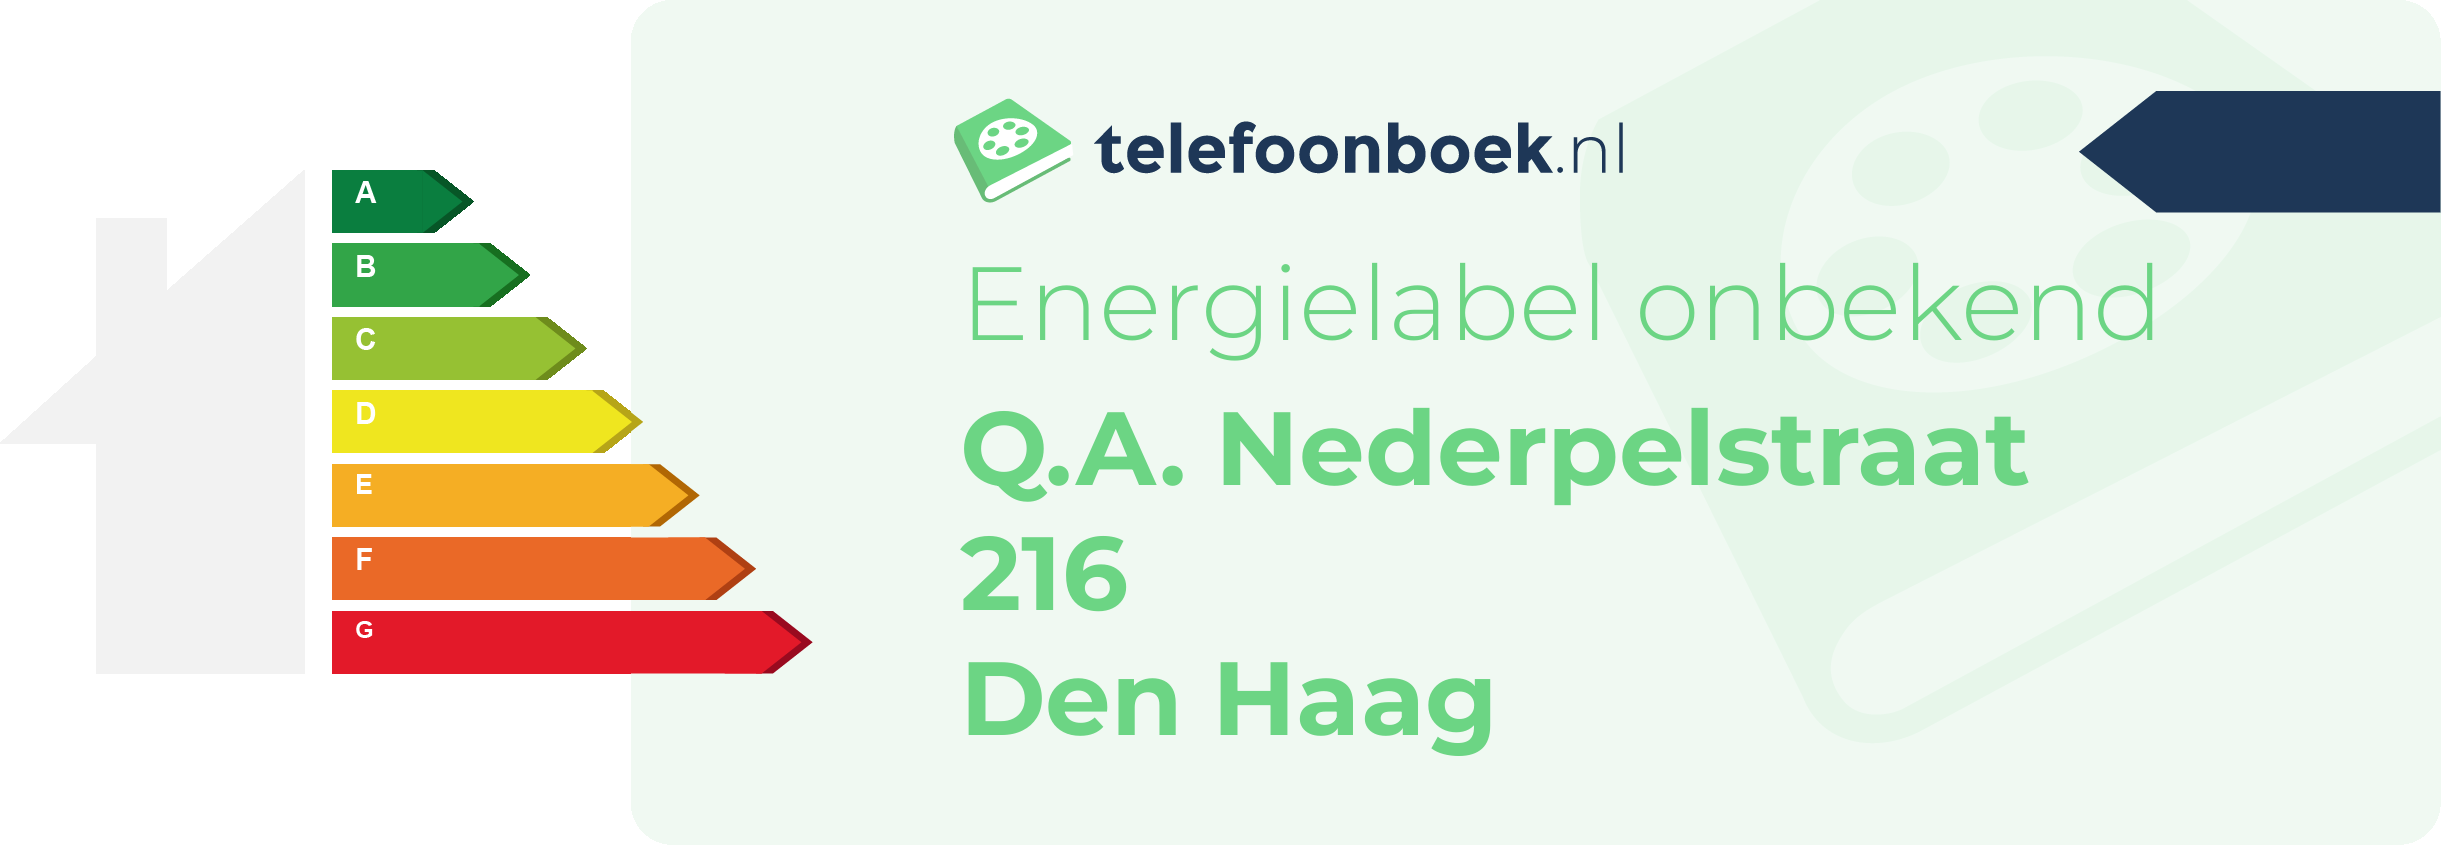 Energielabel Q.A. Nederpelstraat 216 Den Haag